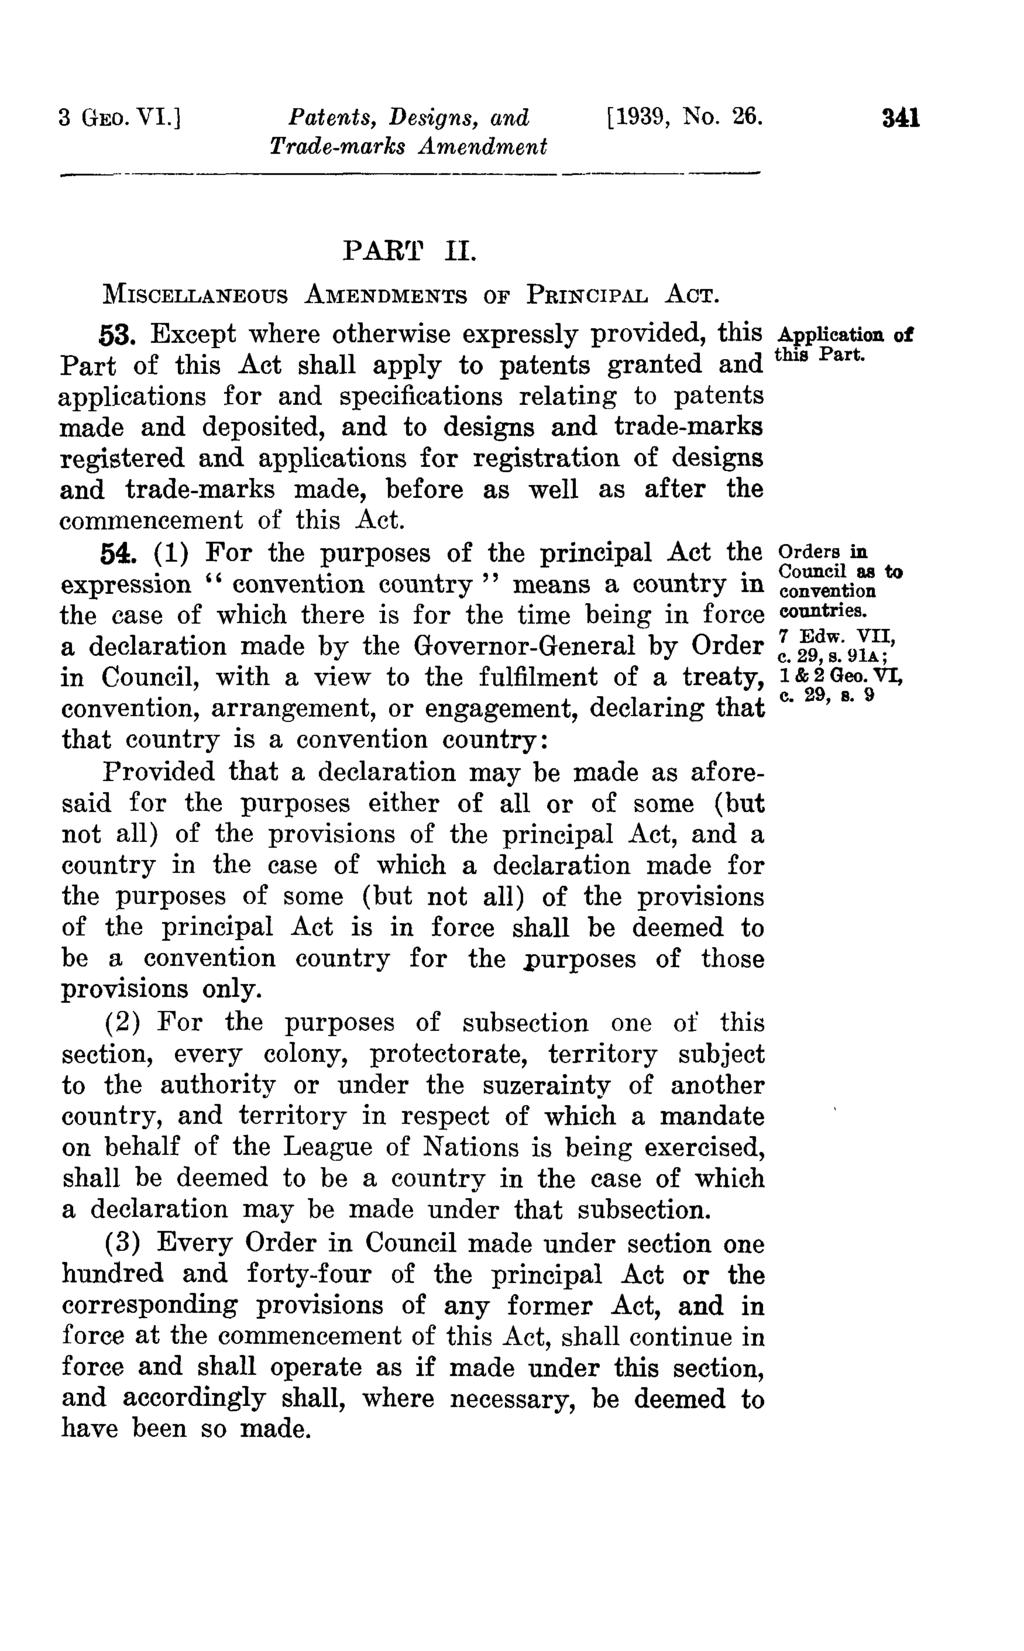 3 GEO. VI.] Patents, Designs, and [1939, No. 26. 341 PAR~' H. MISCELLANEOUS AMENDMENTS OF PRINCIPAL ACT. 53.